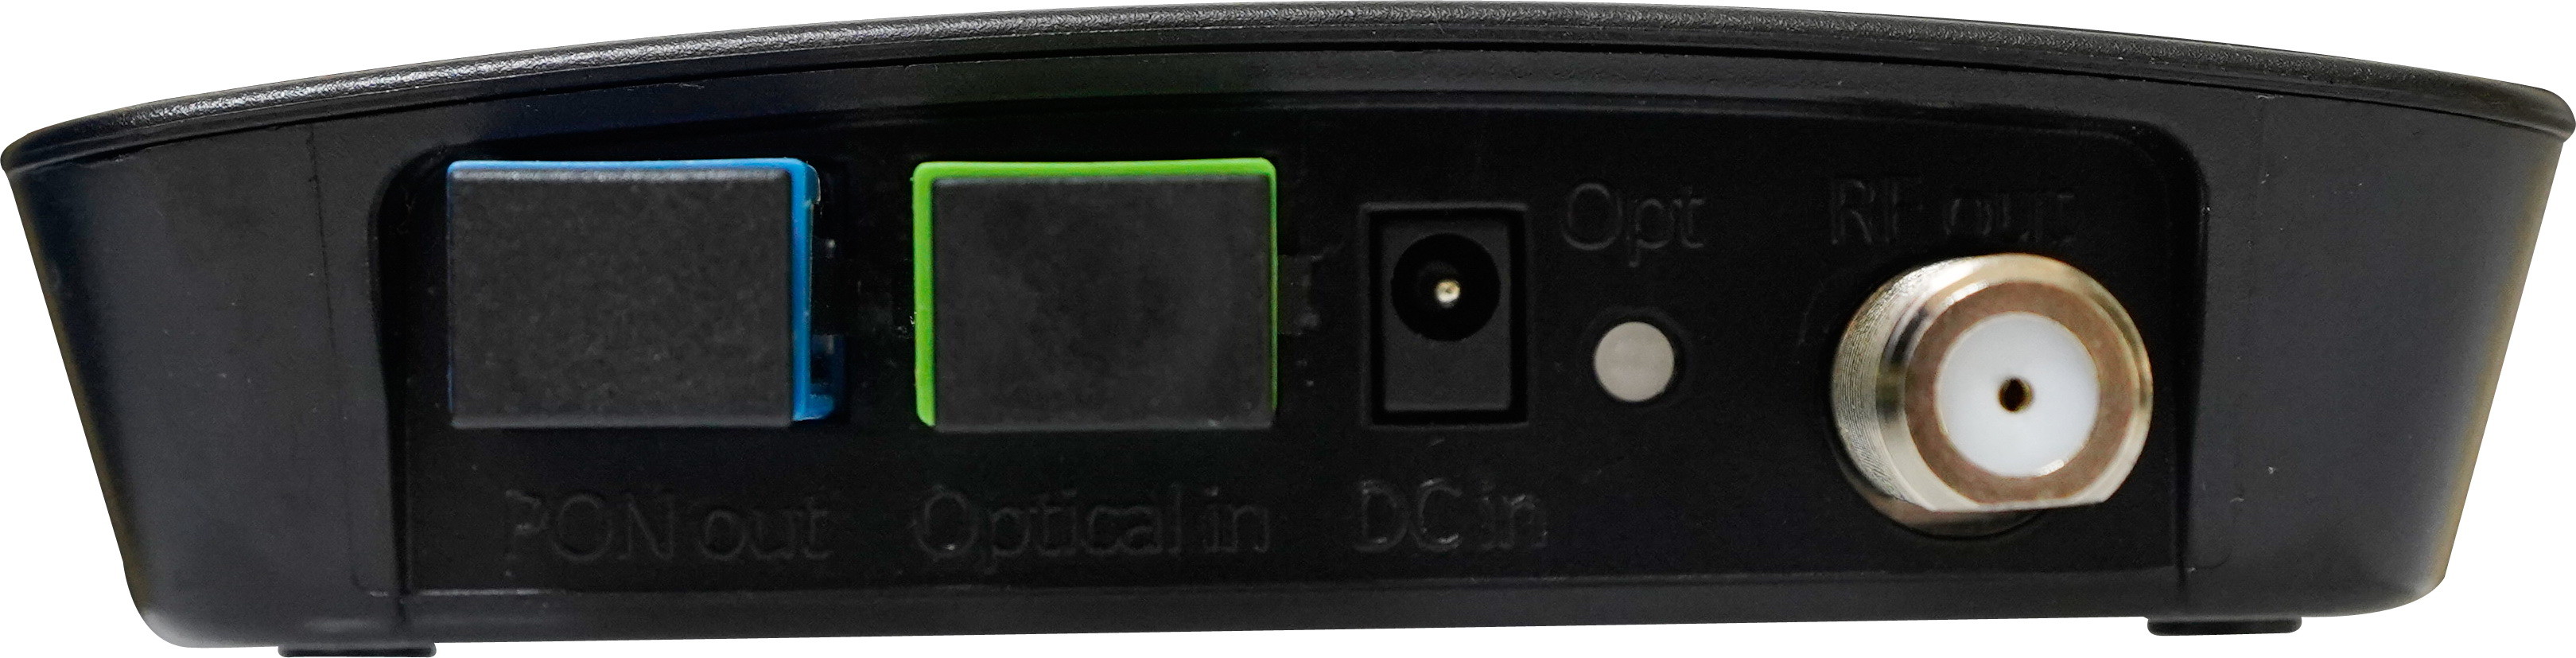 PP Housing Black WDM CATV Optical Receiver A22 123*93*27mm